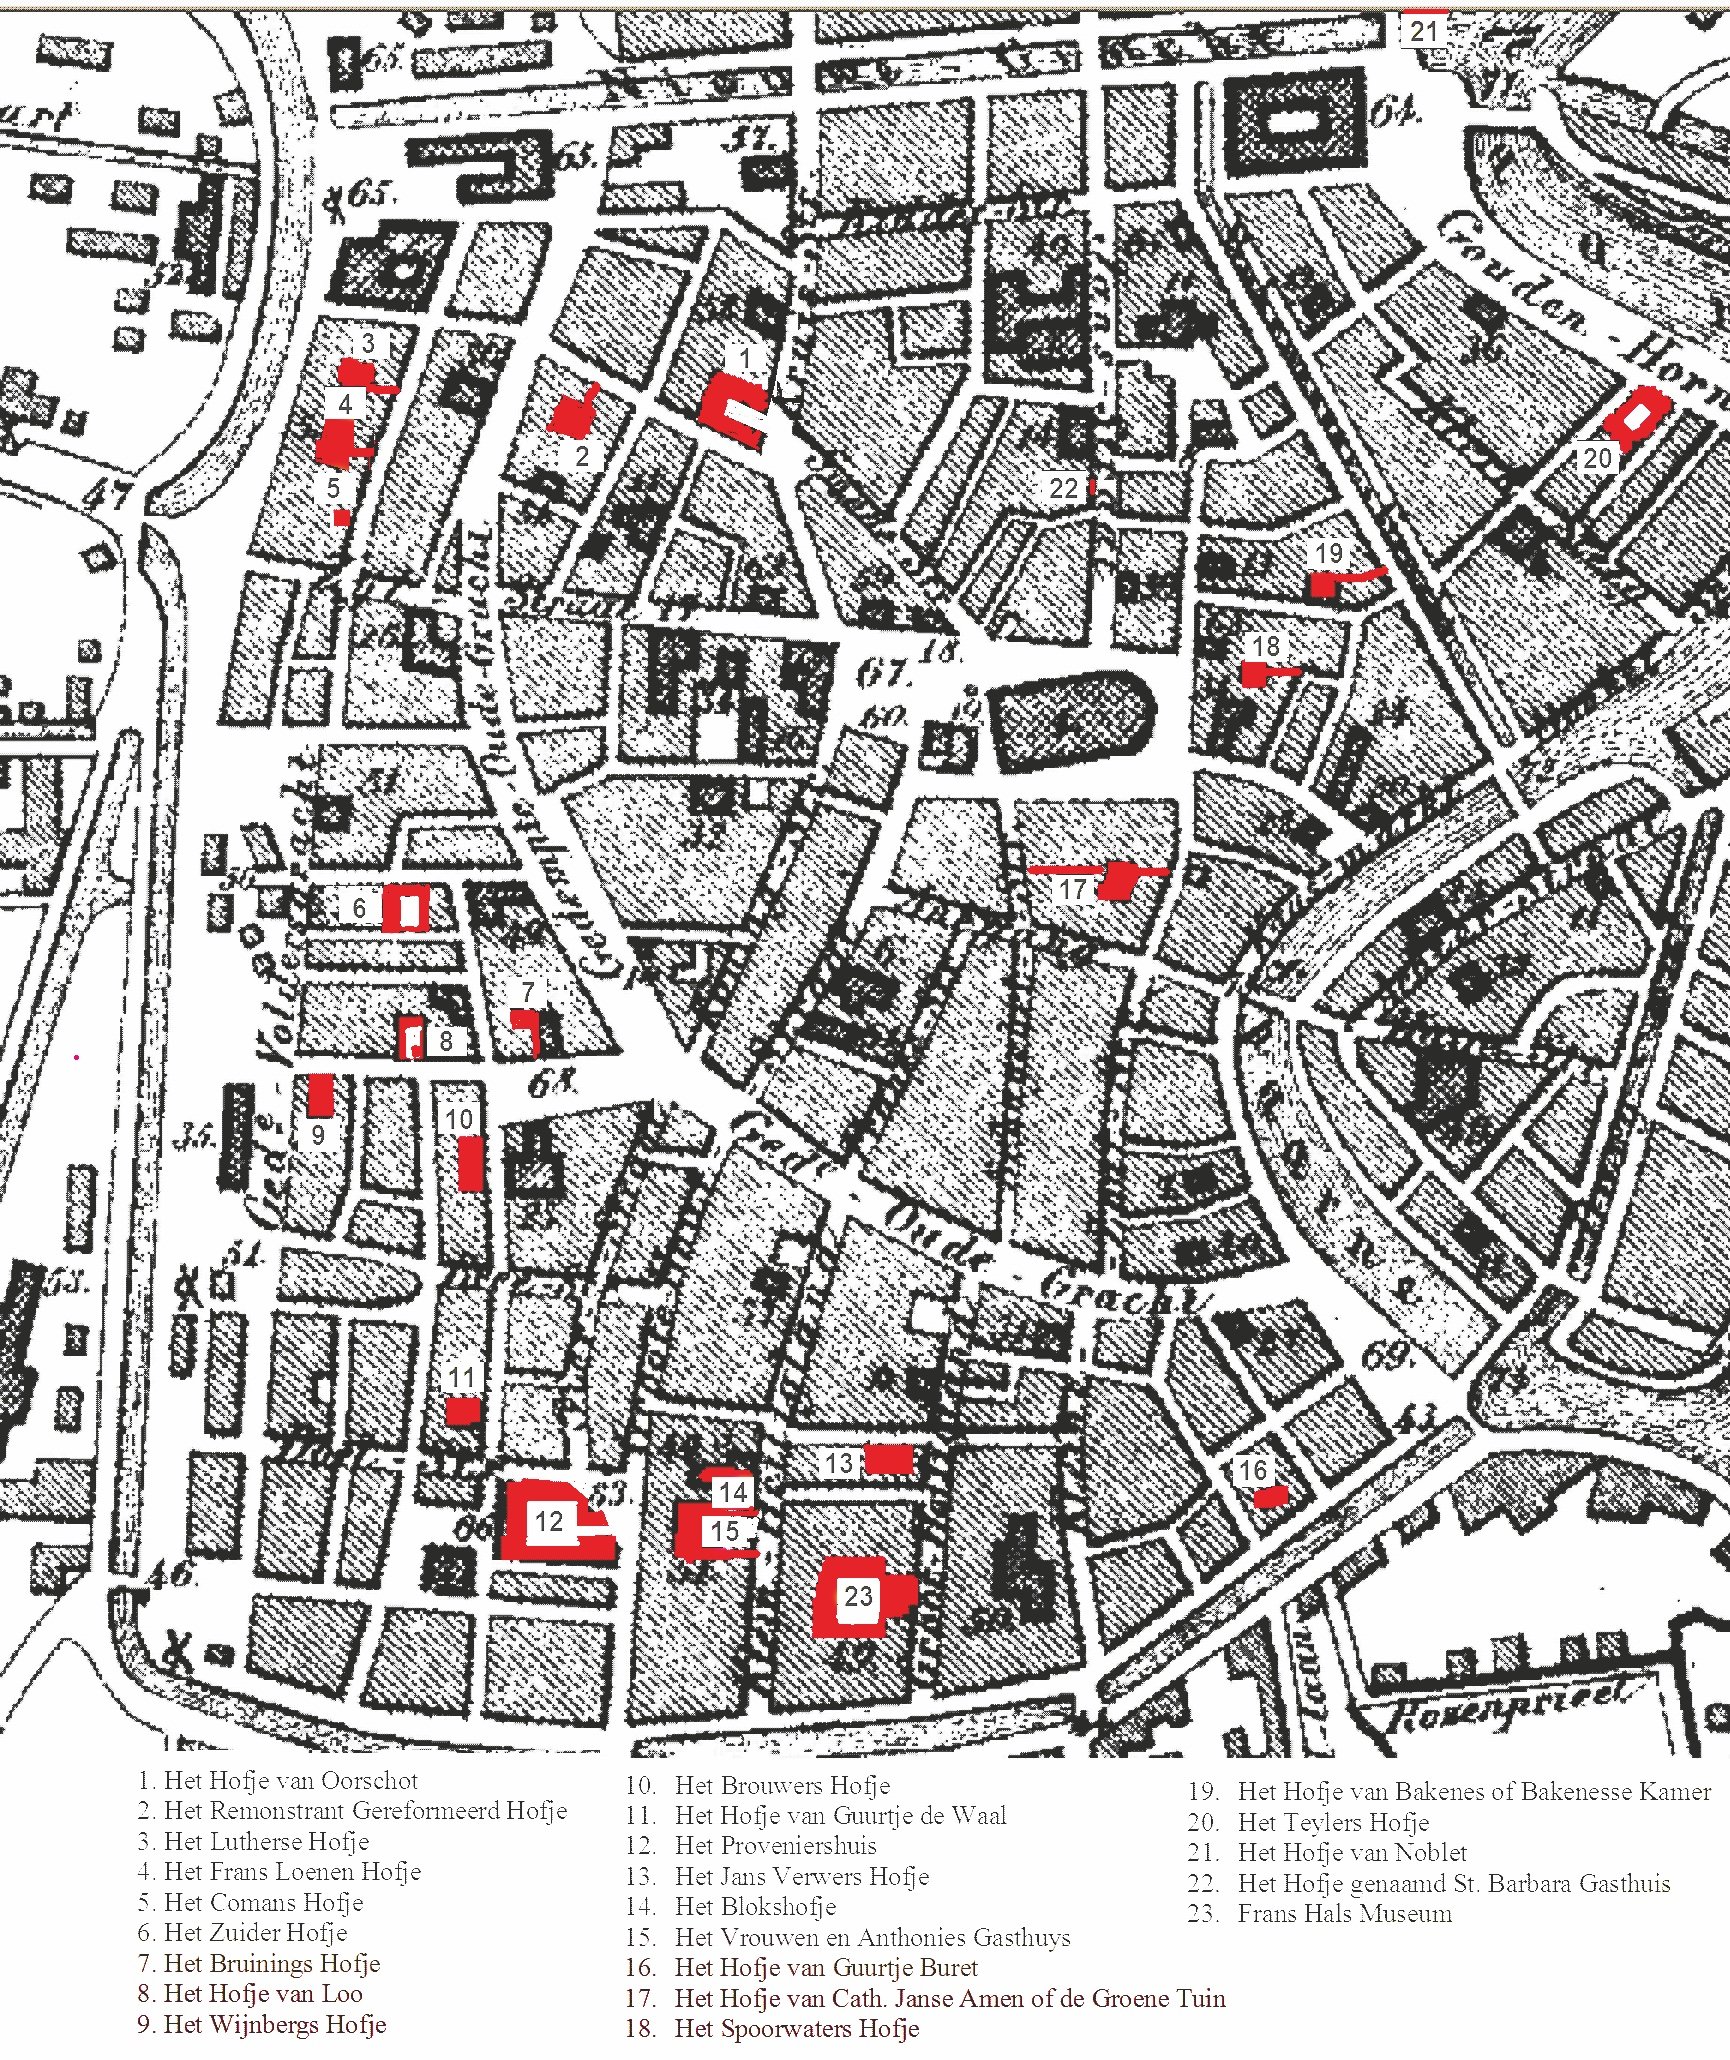 pflanzenfreund-wusstest-du-2_Map_of_Hofjes_in_Haarlem_b.jpg